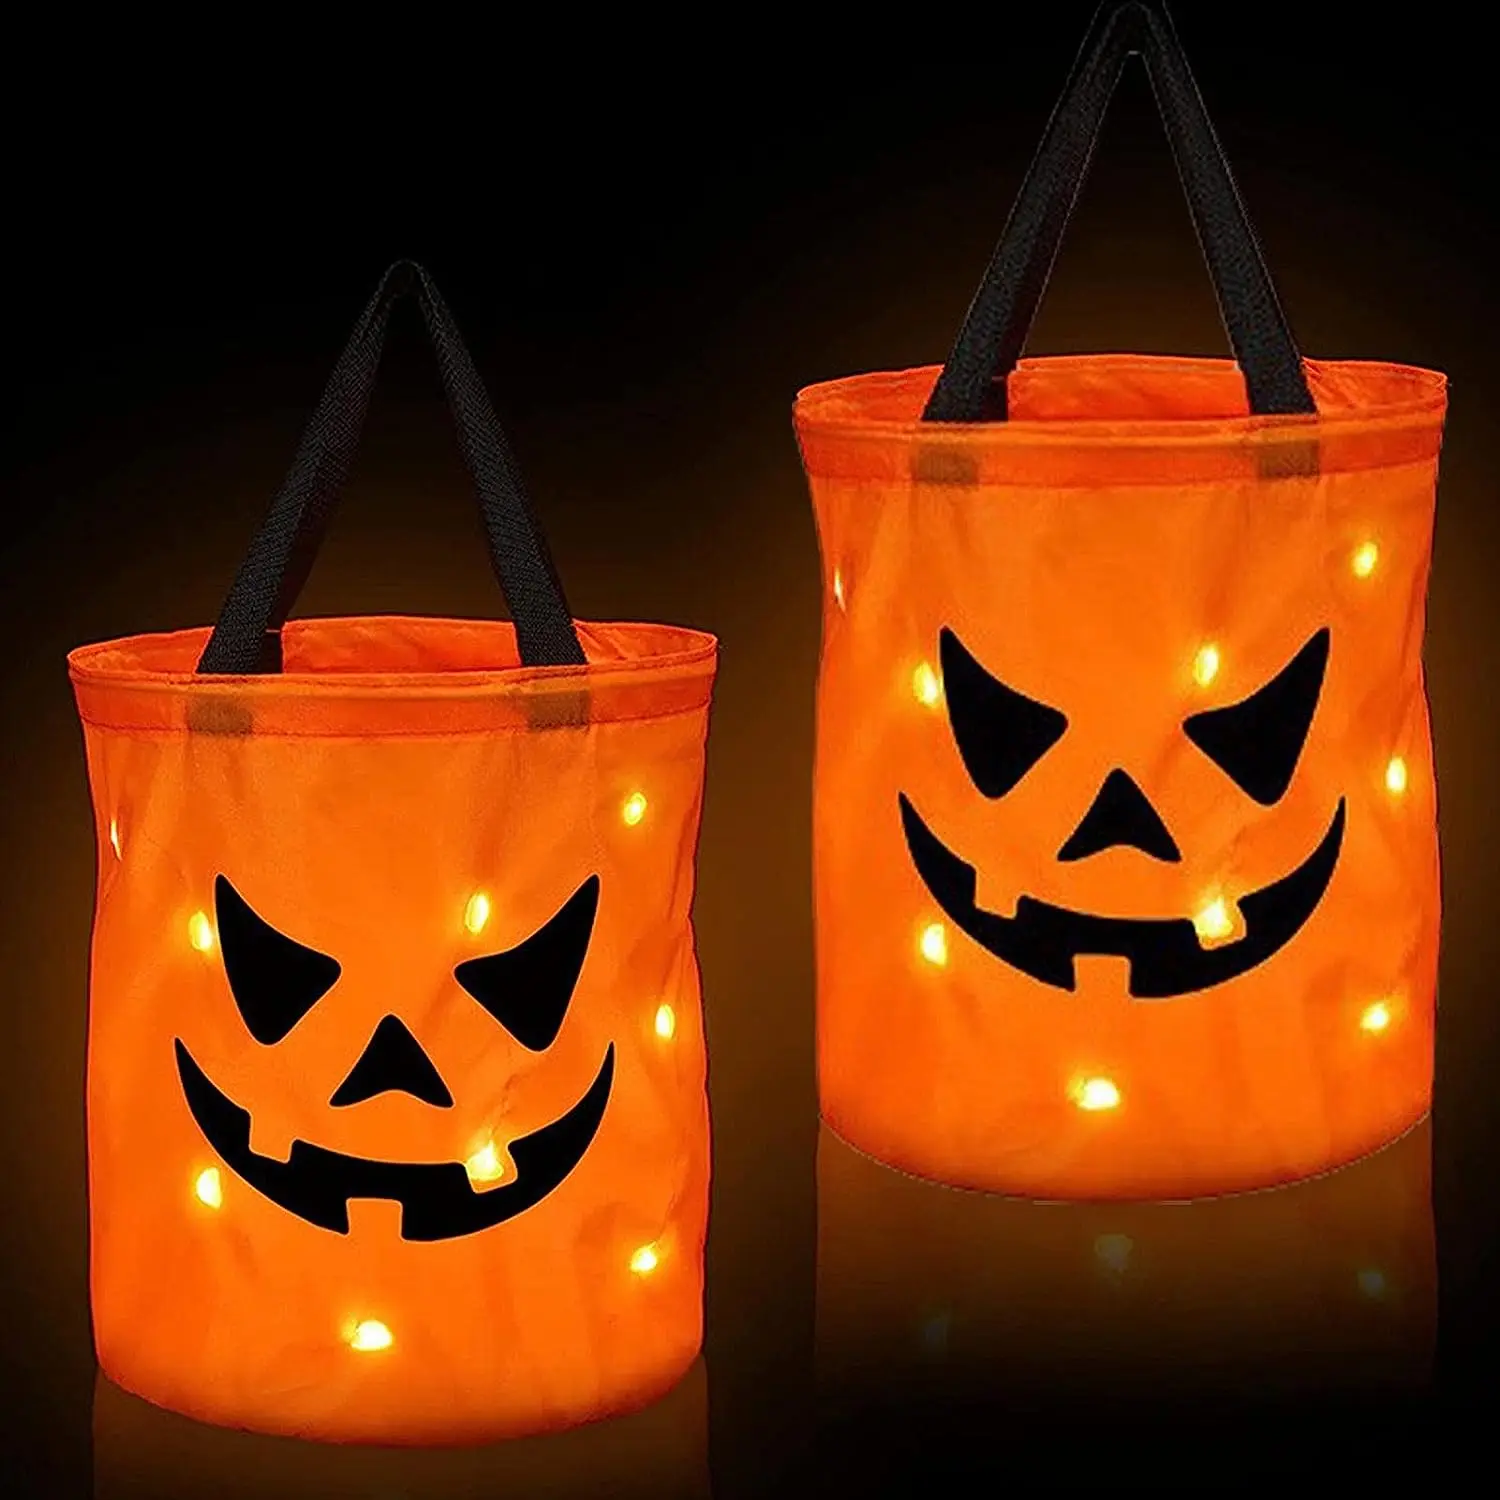 Светодиодная сумка для подарков на Хэллоуин - многоцелевая сумка из тыквы с подсветкой | Легкое ведерко для подарков для детей, сувениры для Хэллоуина 2